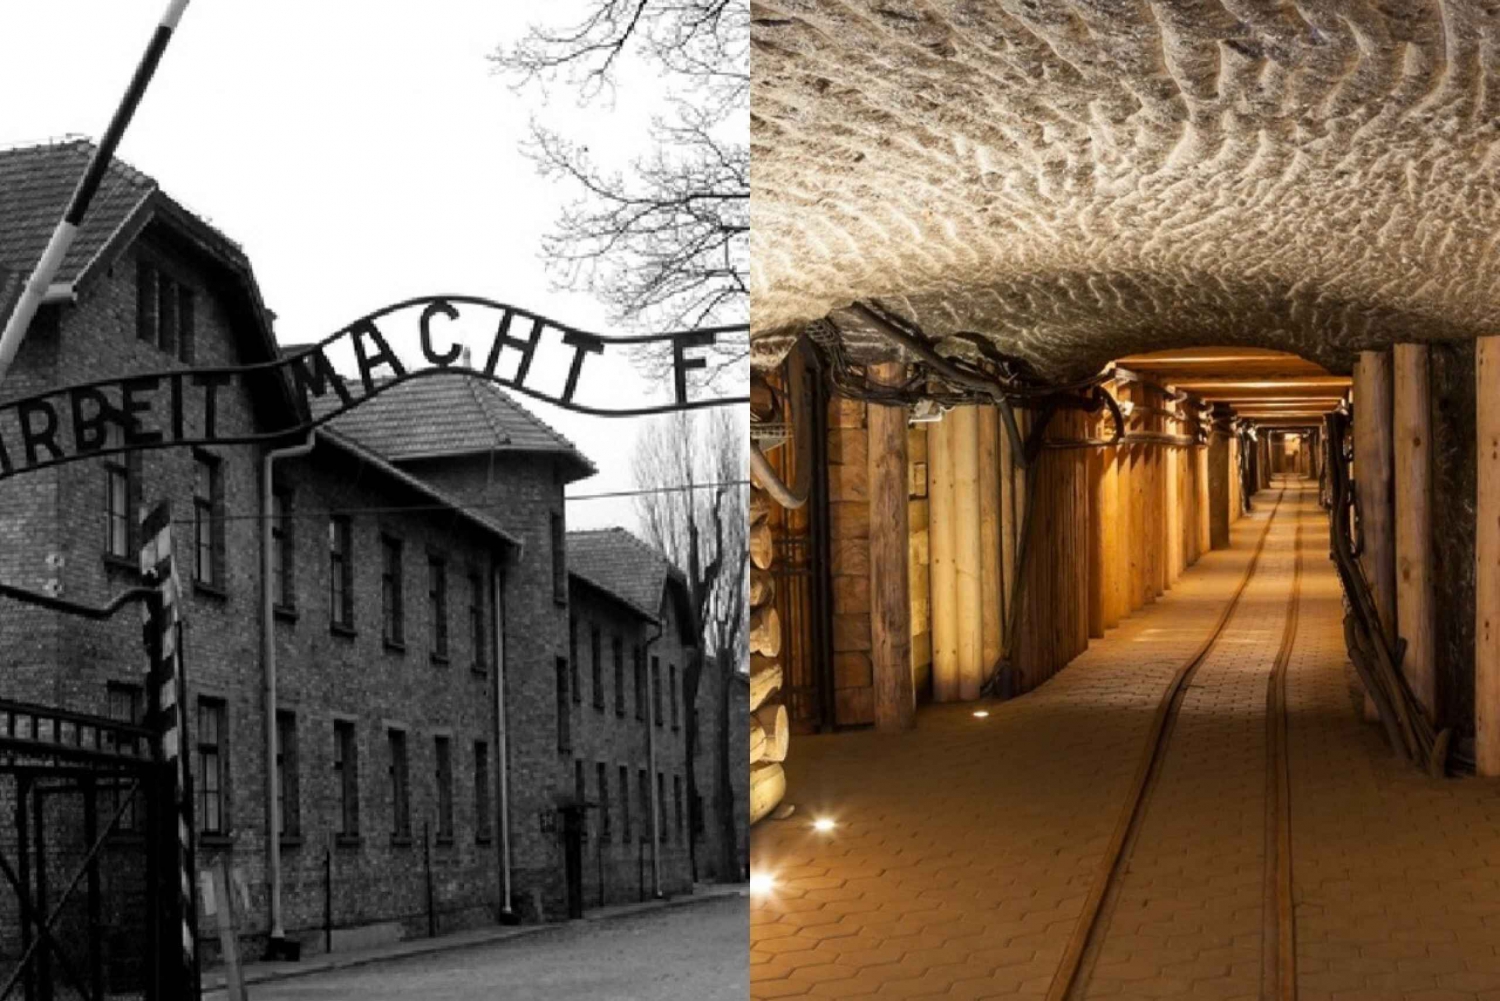 From Kraków: Auschwitz-Birkenau and/or Salt Mine Guided Tour